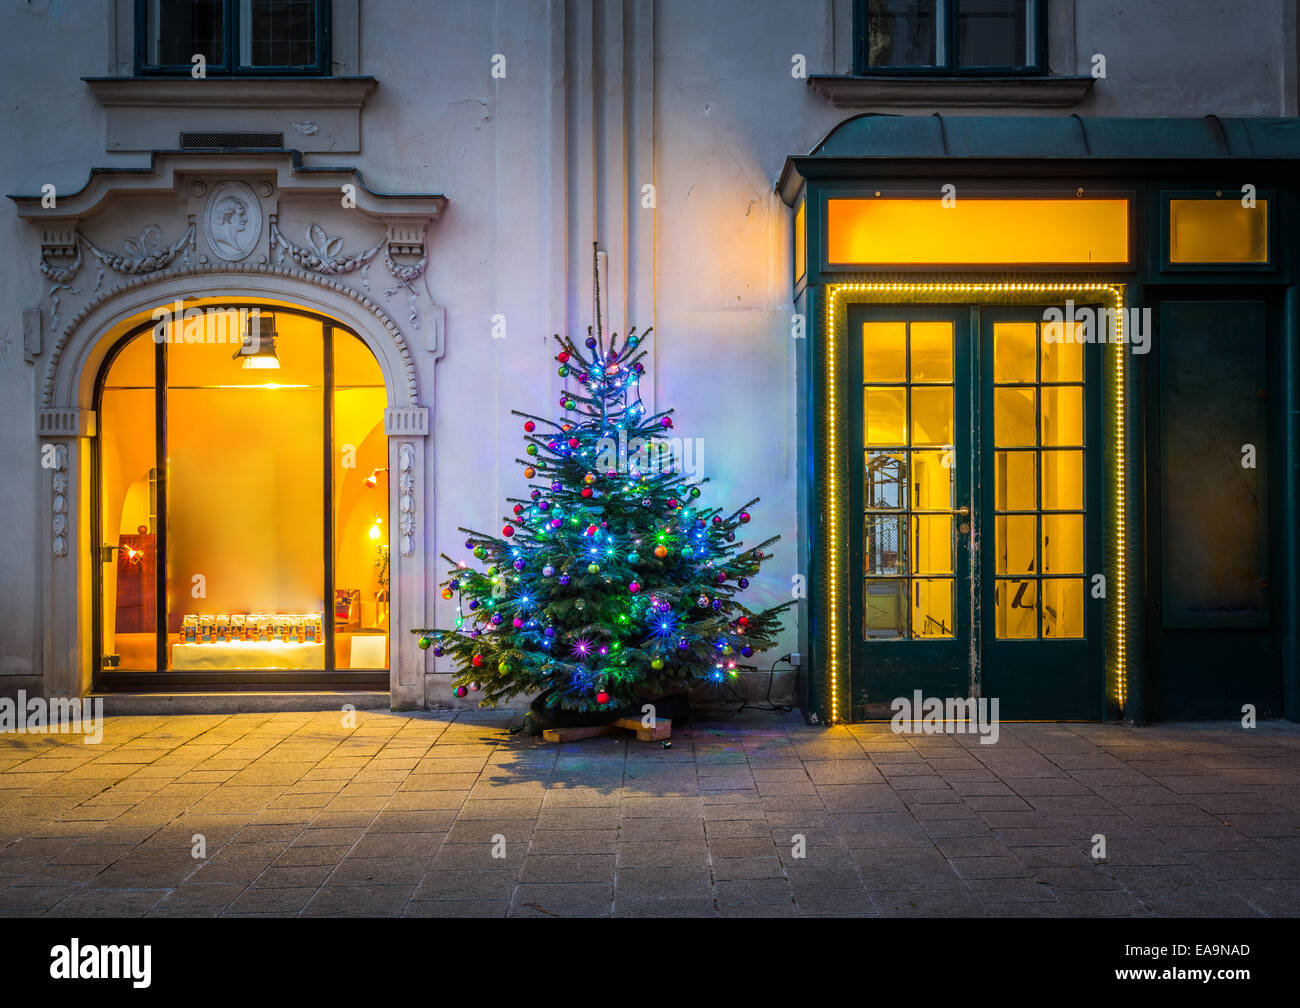 Christmas tree in Vienna Stock Image